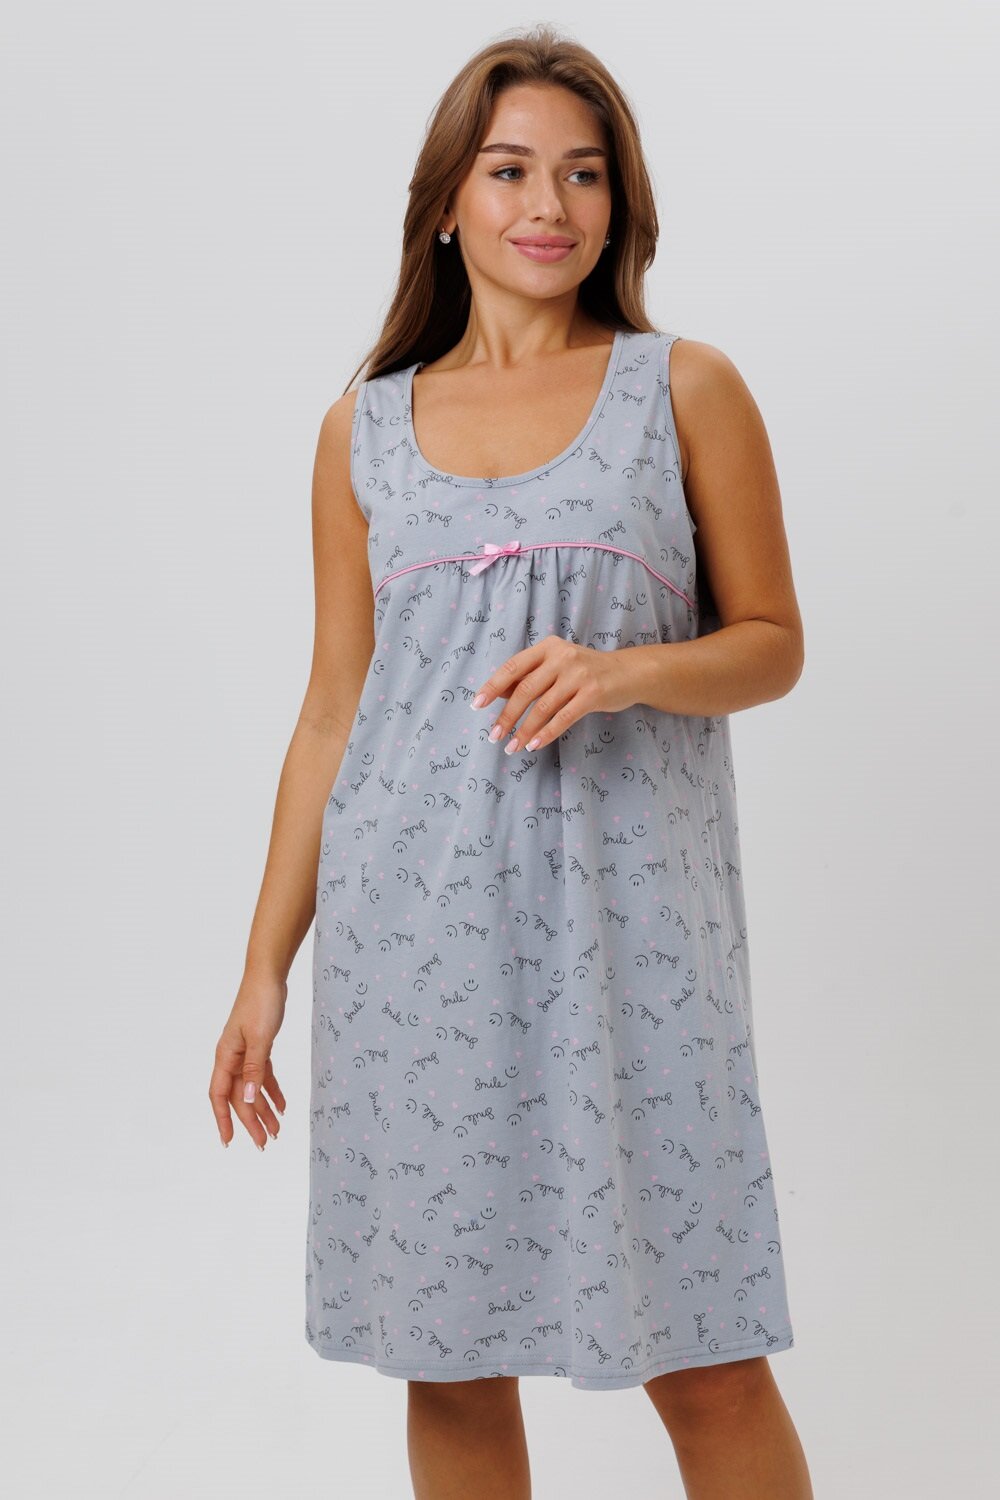 Сорочка женская ночная Modellini 1629/2 цвет серый, размер 60 - фотография № 8